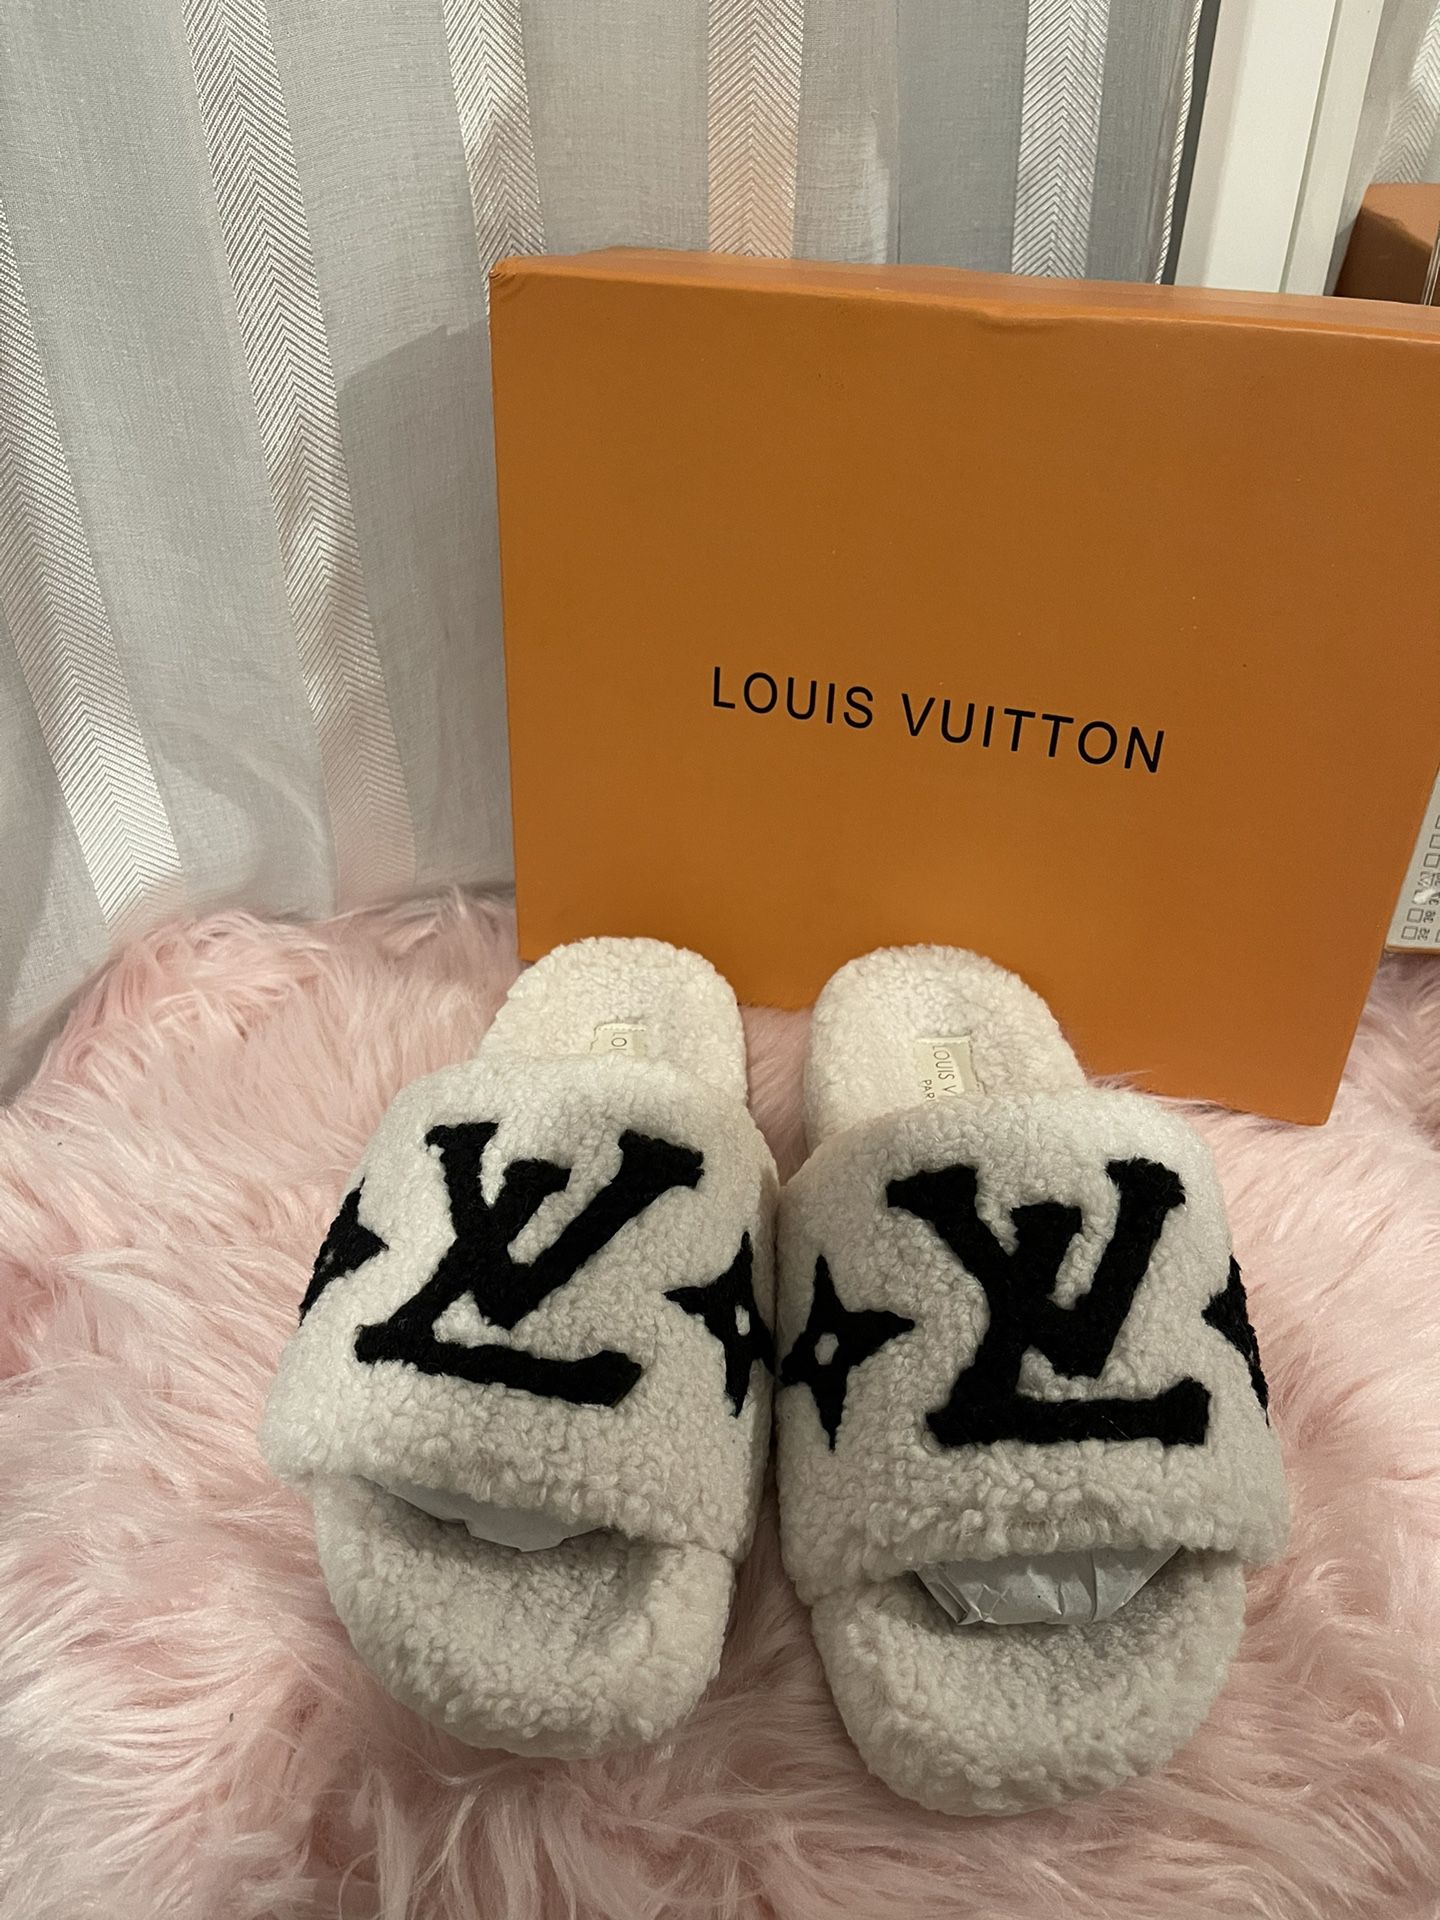 Louis Vuitton HOCKENHEIM MOCCASIN for Sale in Anaheim, CA - OfferUp